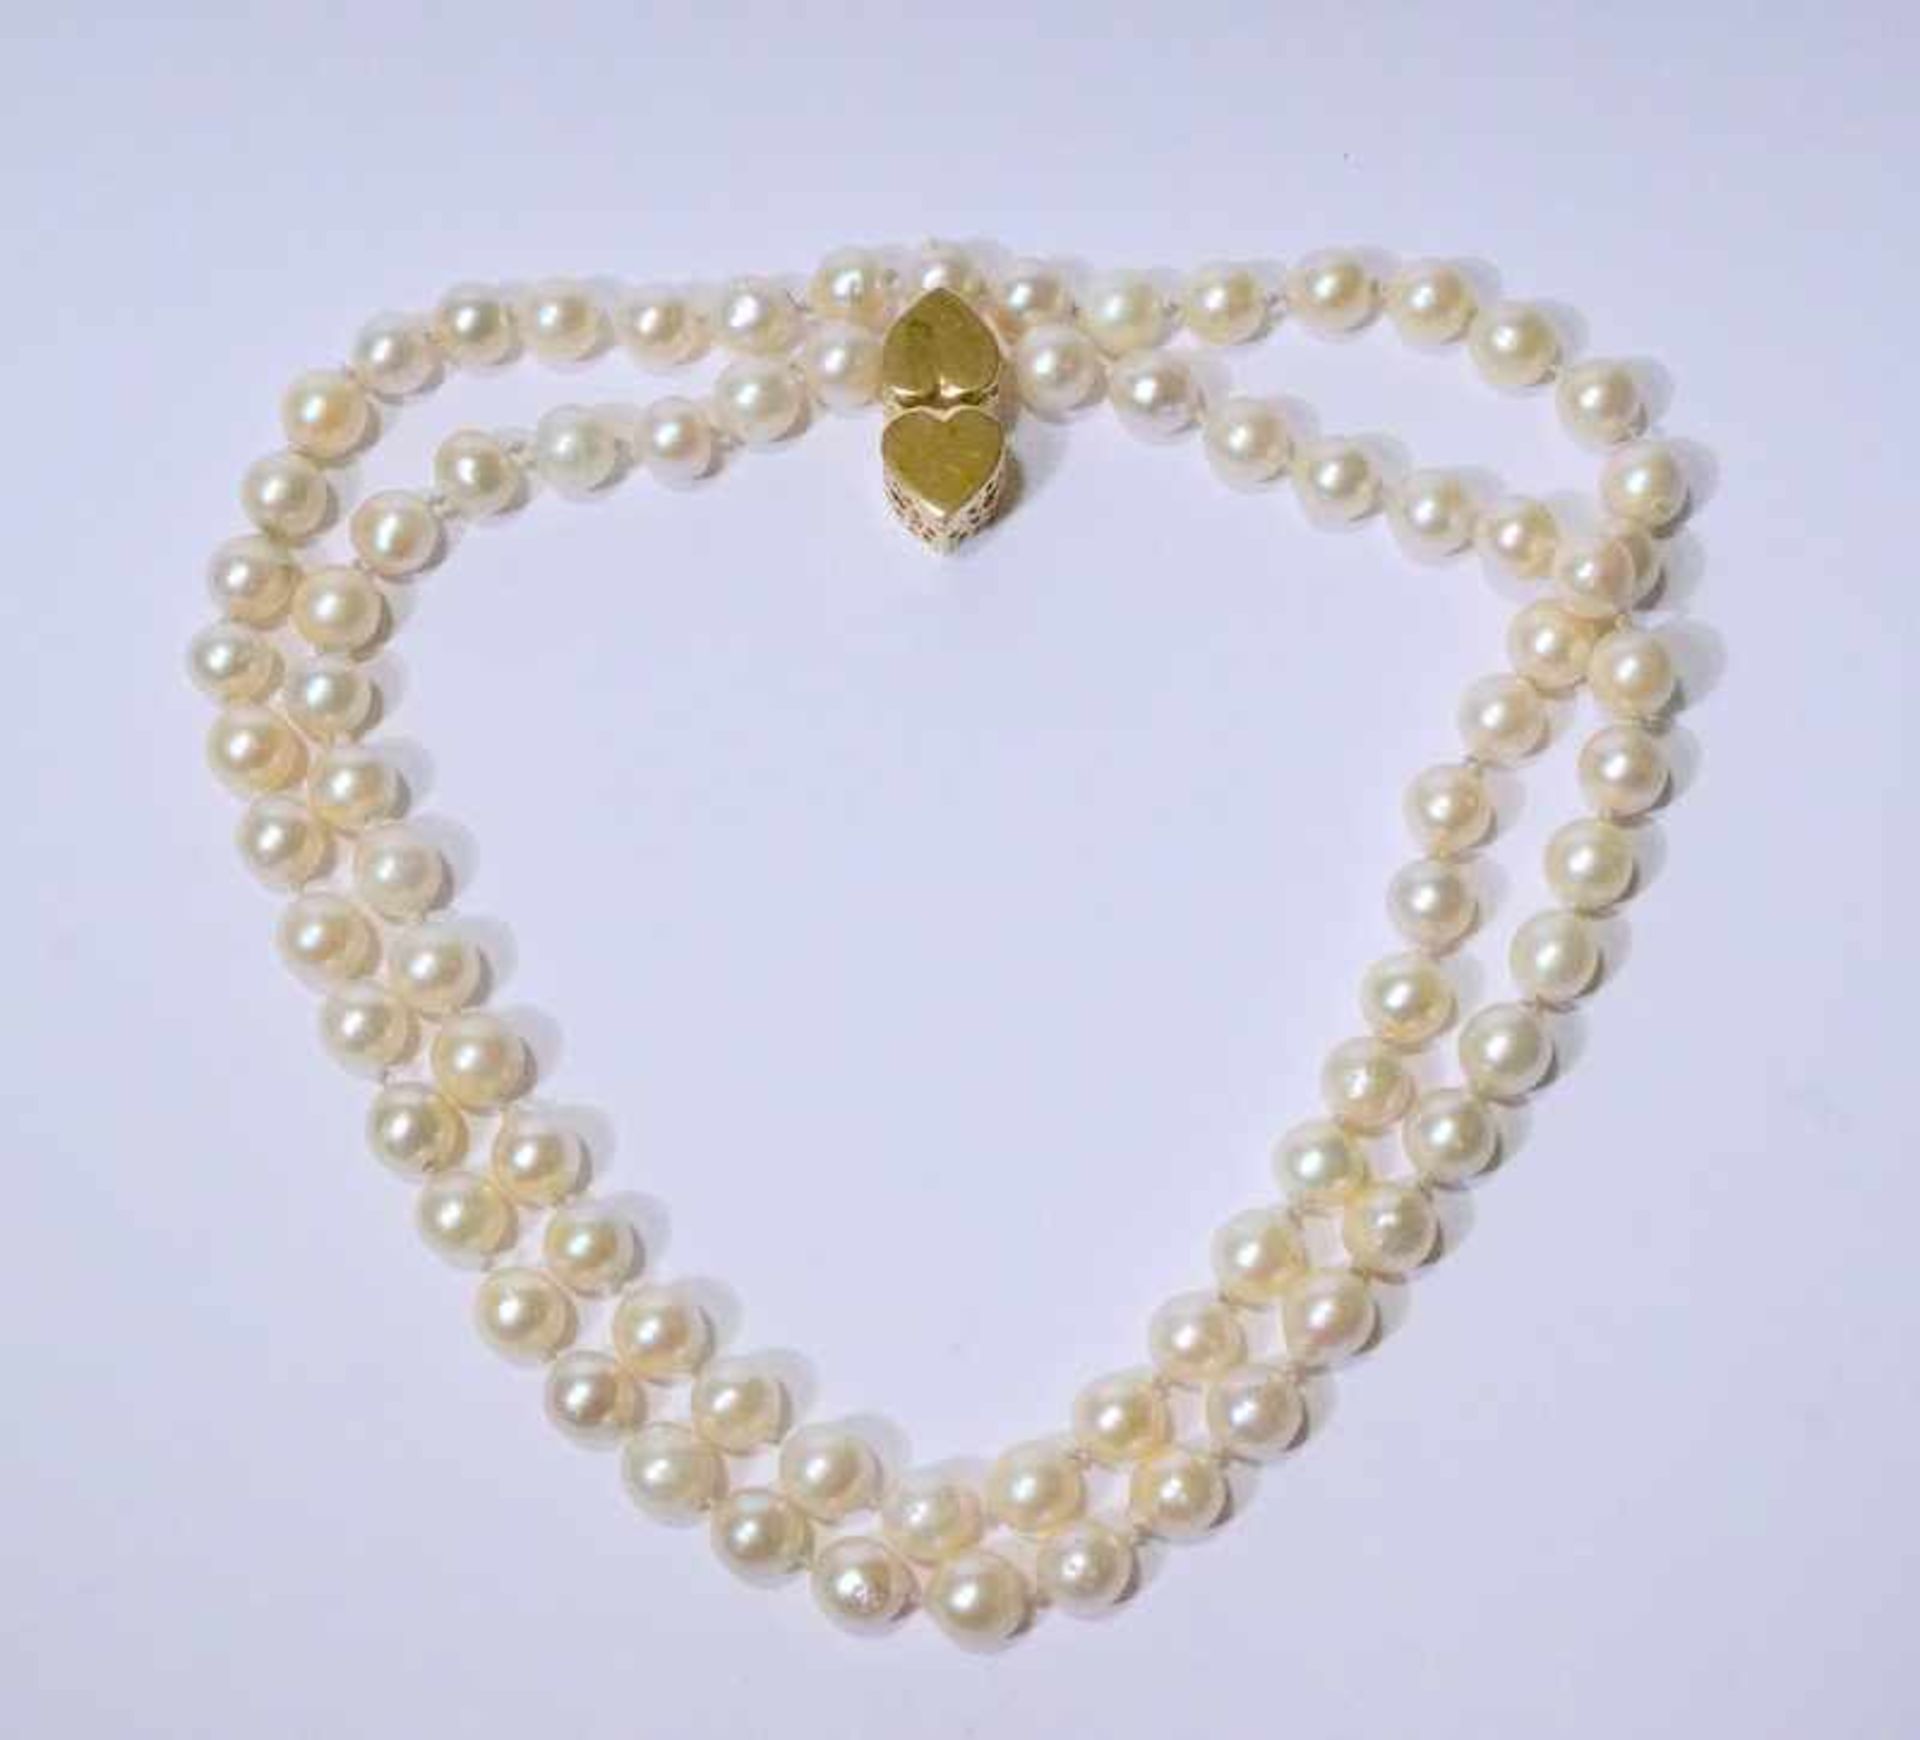 Südsseeperlenkette mit 80 Perlen à 1cm und 750er Schliessechampagnerfarben, von guter Qualität,